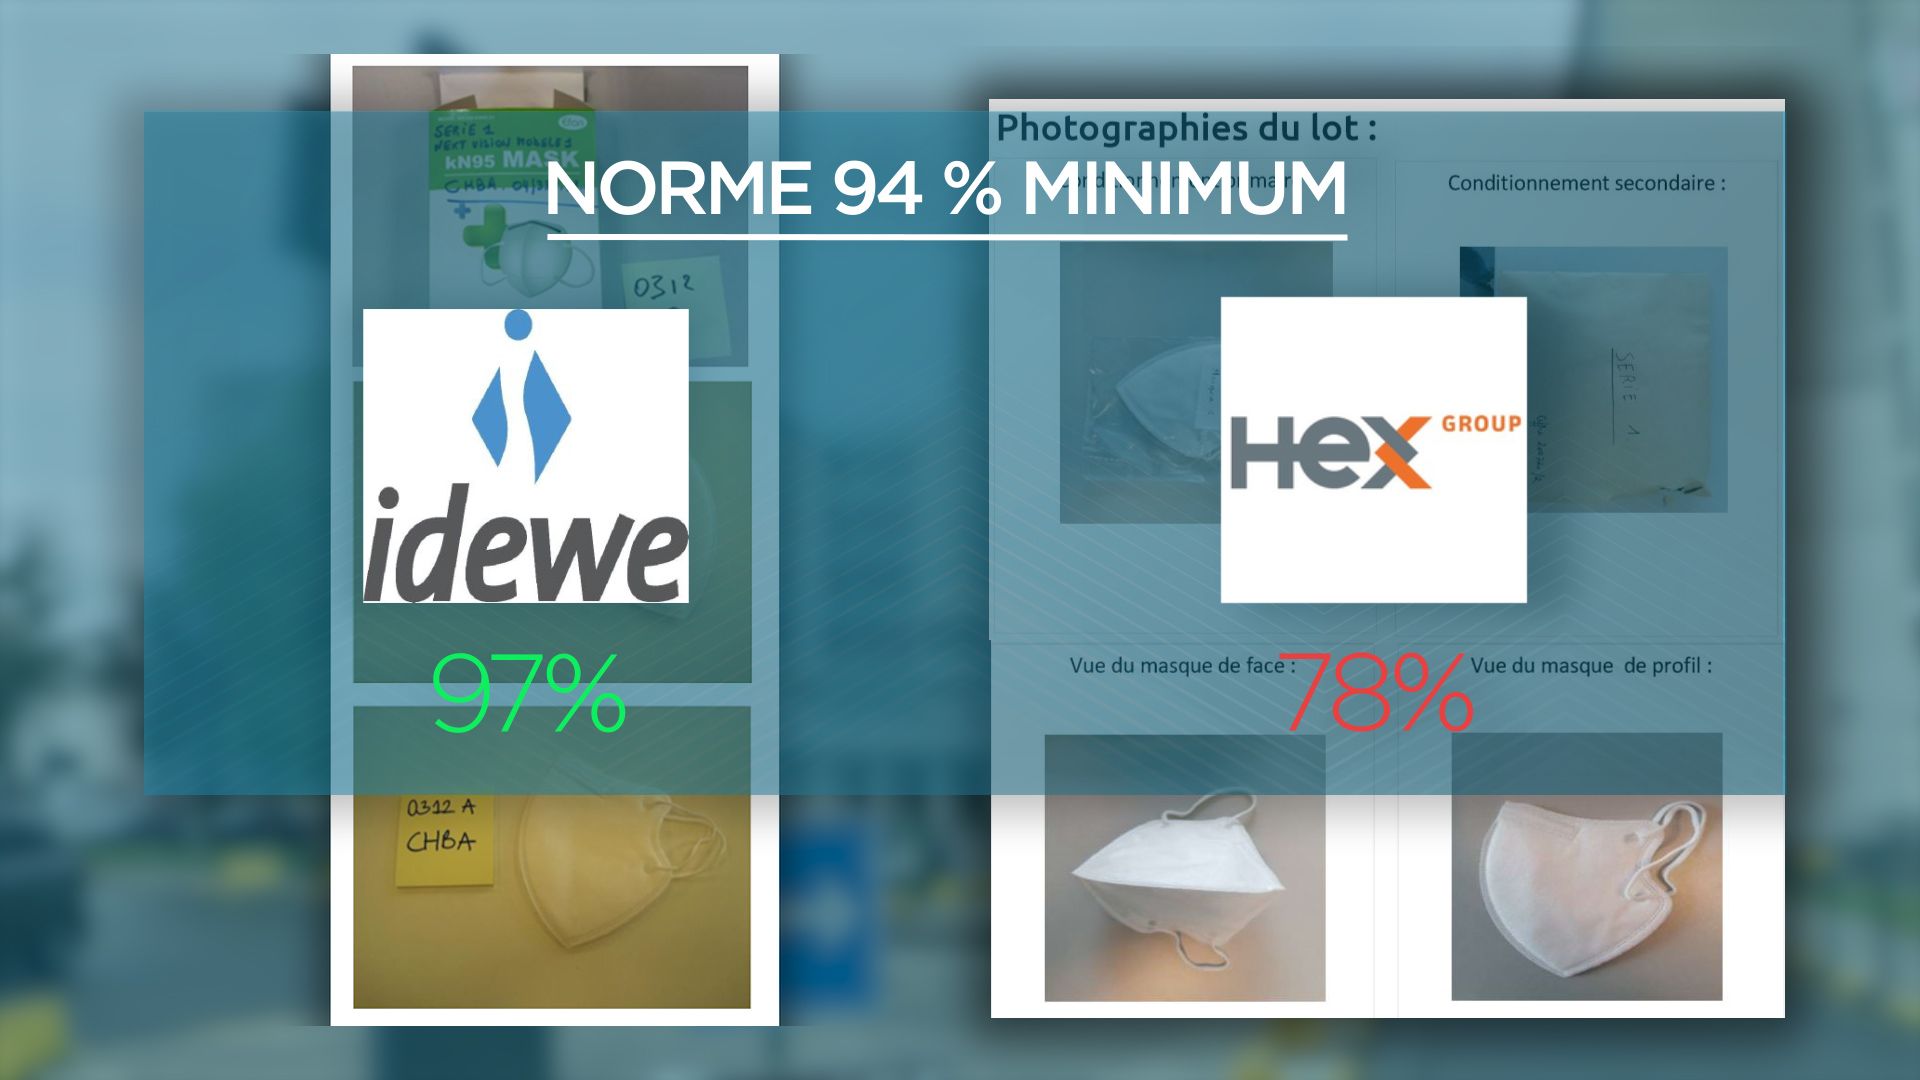 Comparatif entre le rapport d'IDEWE et HEX pour le même lot de masques